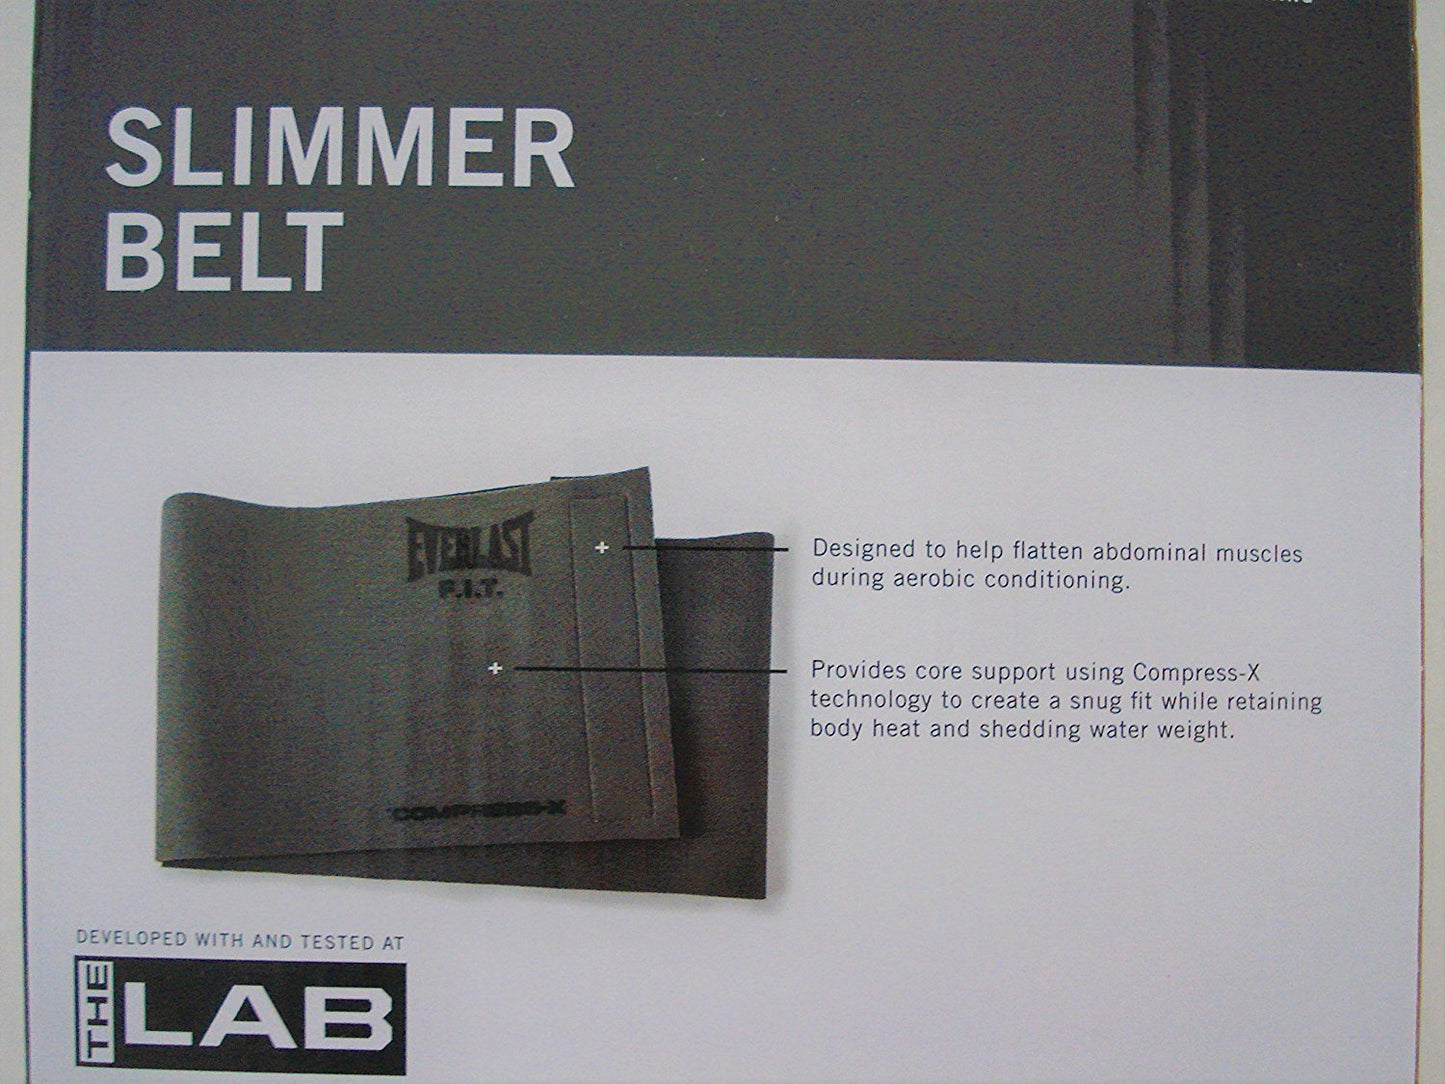 Everlast P00000378 Slimmer Belt, 52-inch (Grey) - Best Price online Prokicksports.com